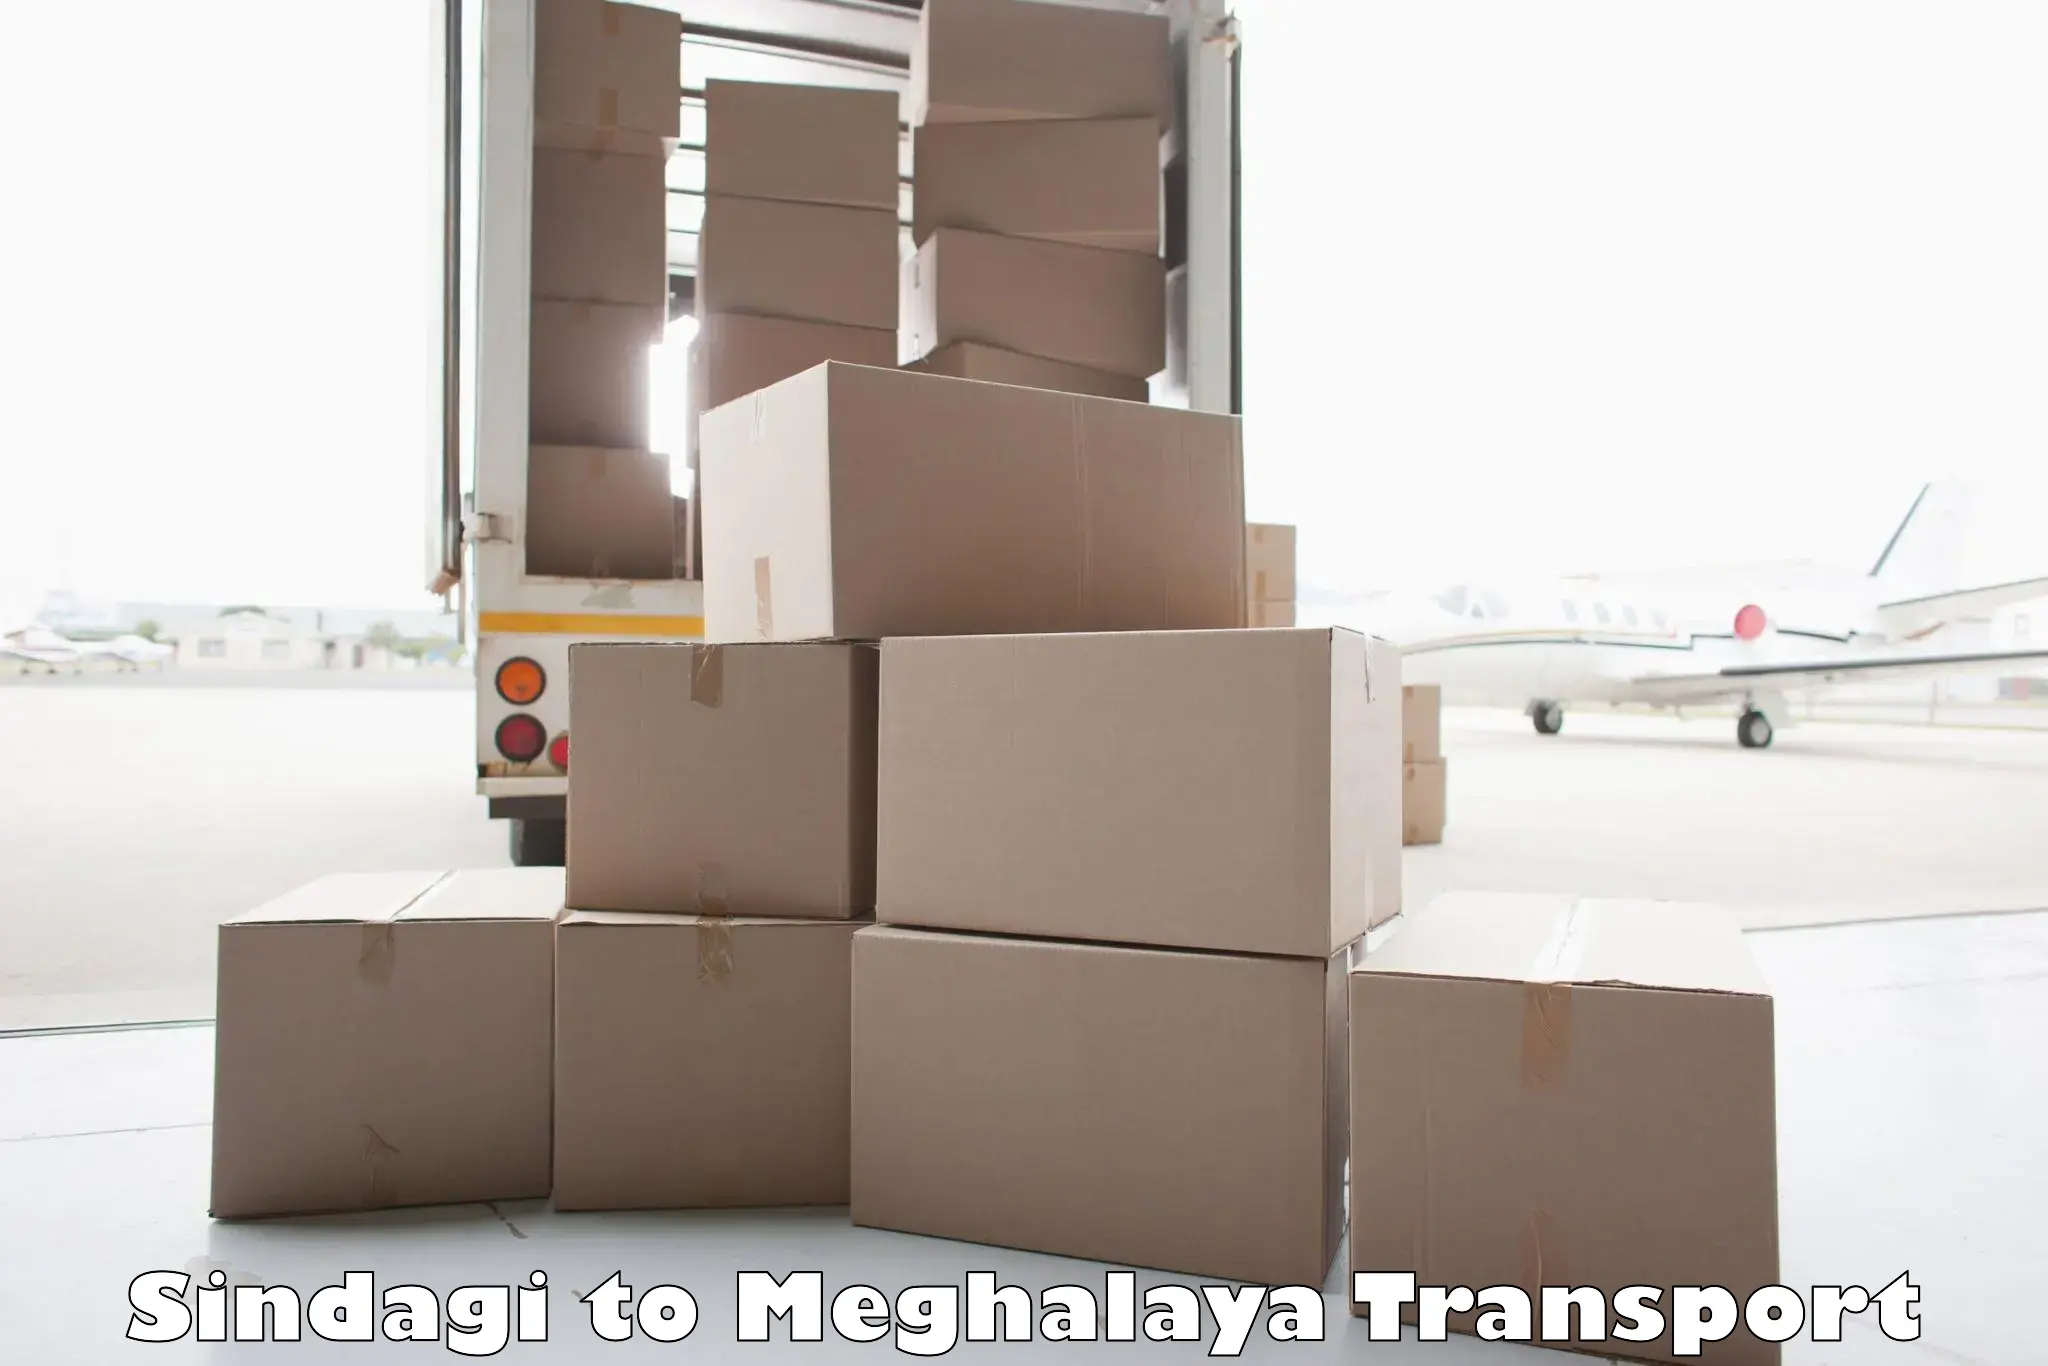 Online transport service Sindagi to Meghalaya